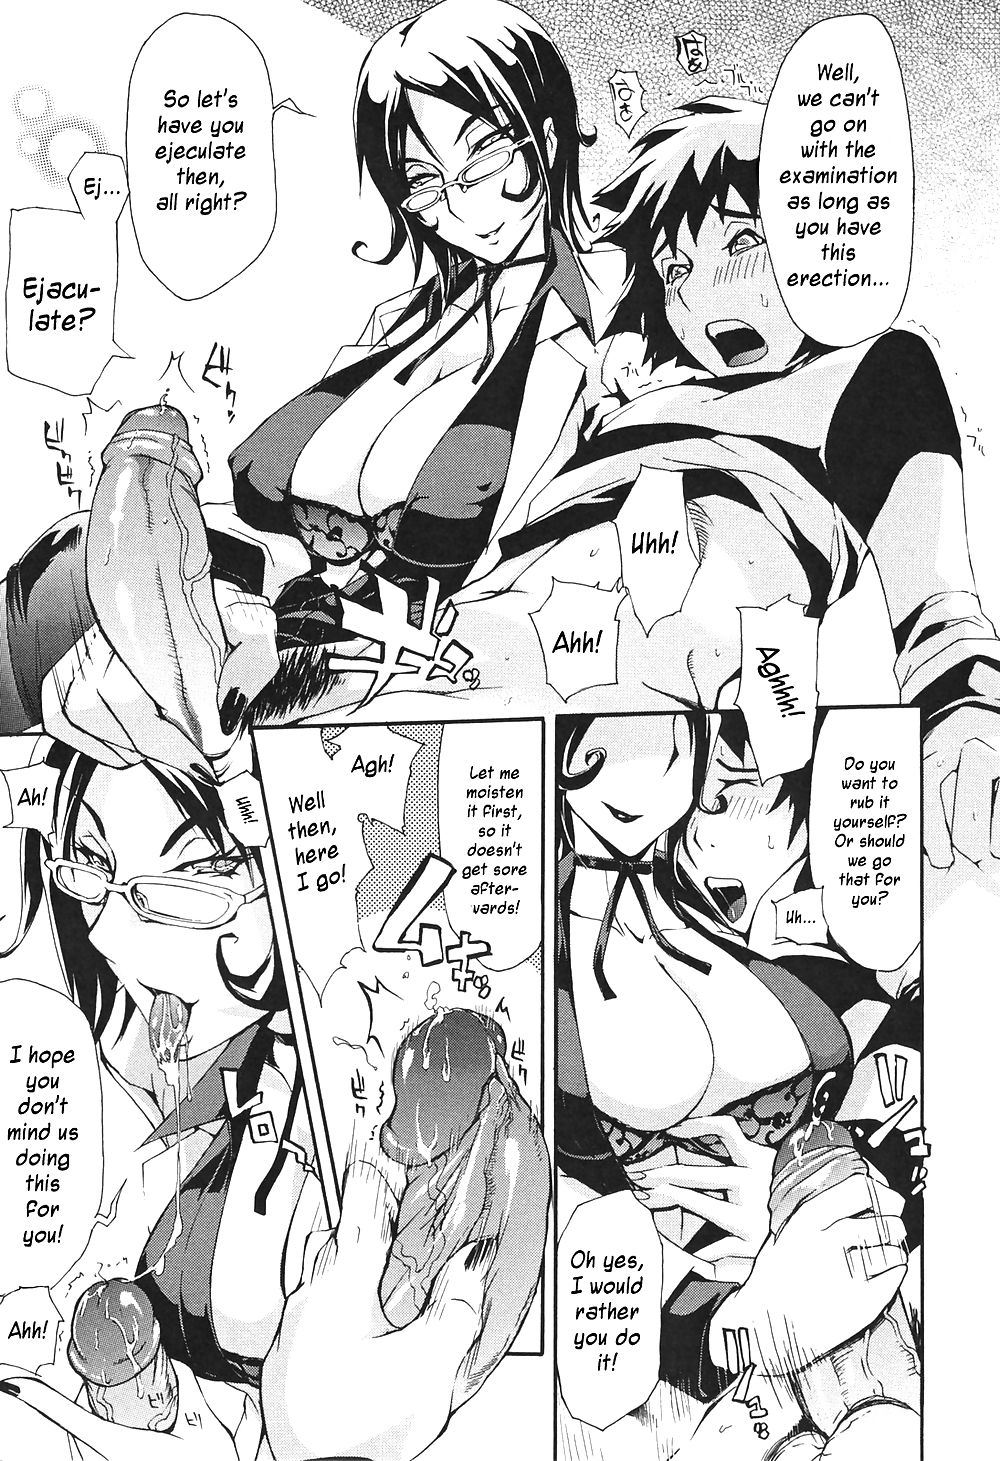 (fumetto hentai) unioshi opere erotiche
 #21733484